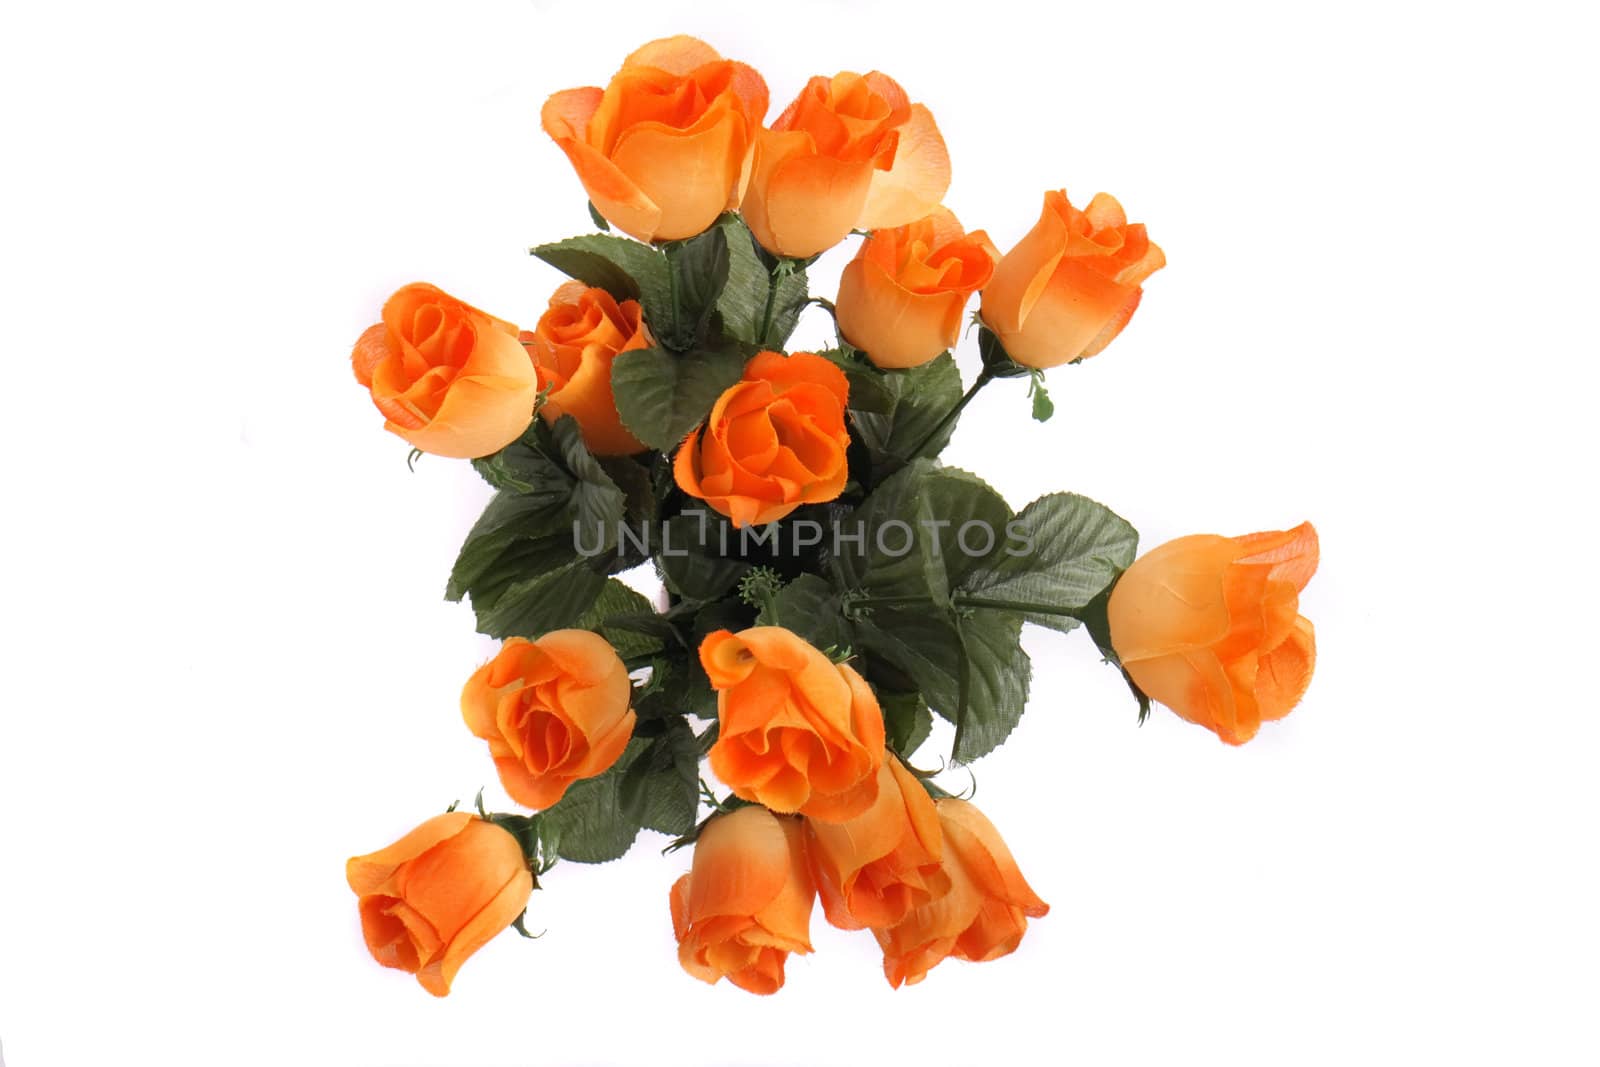 fresh orange roses on the white background